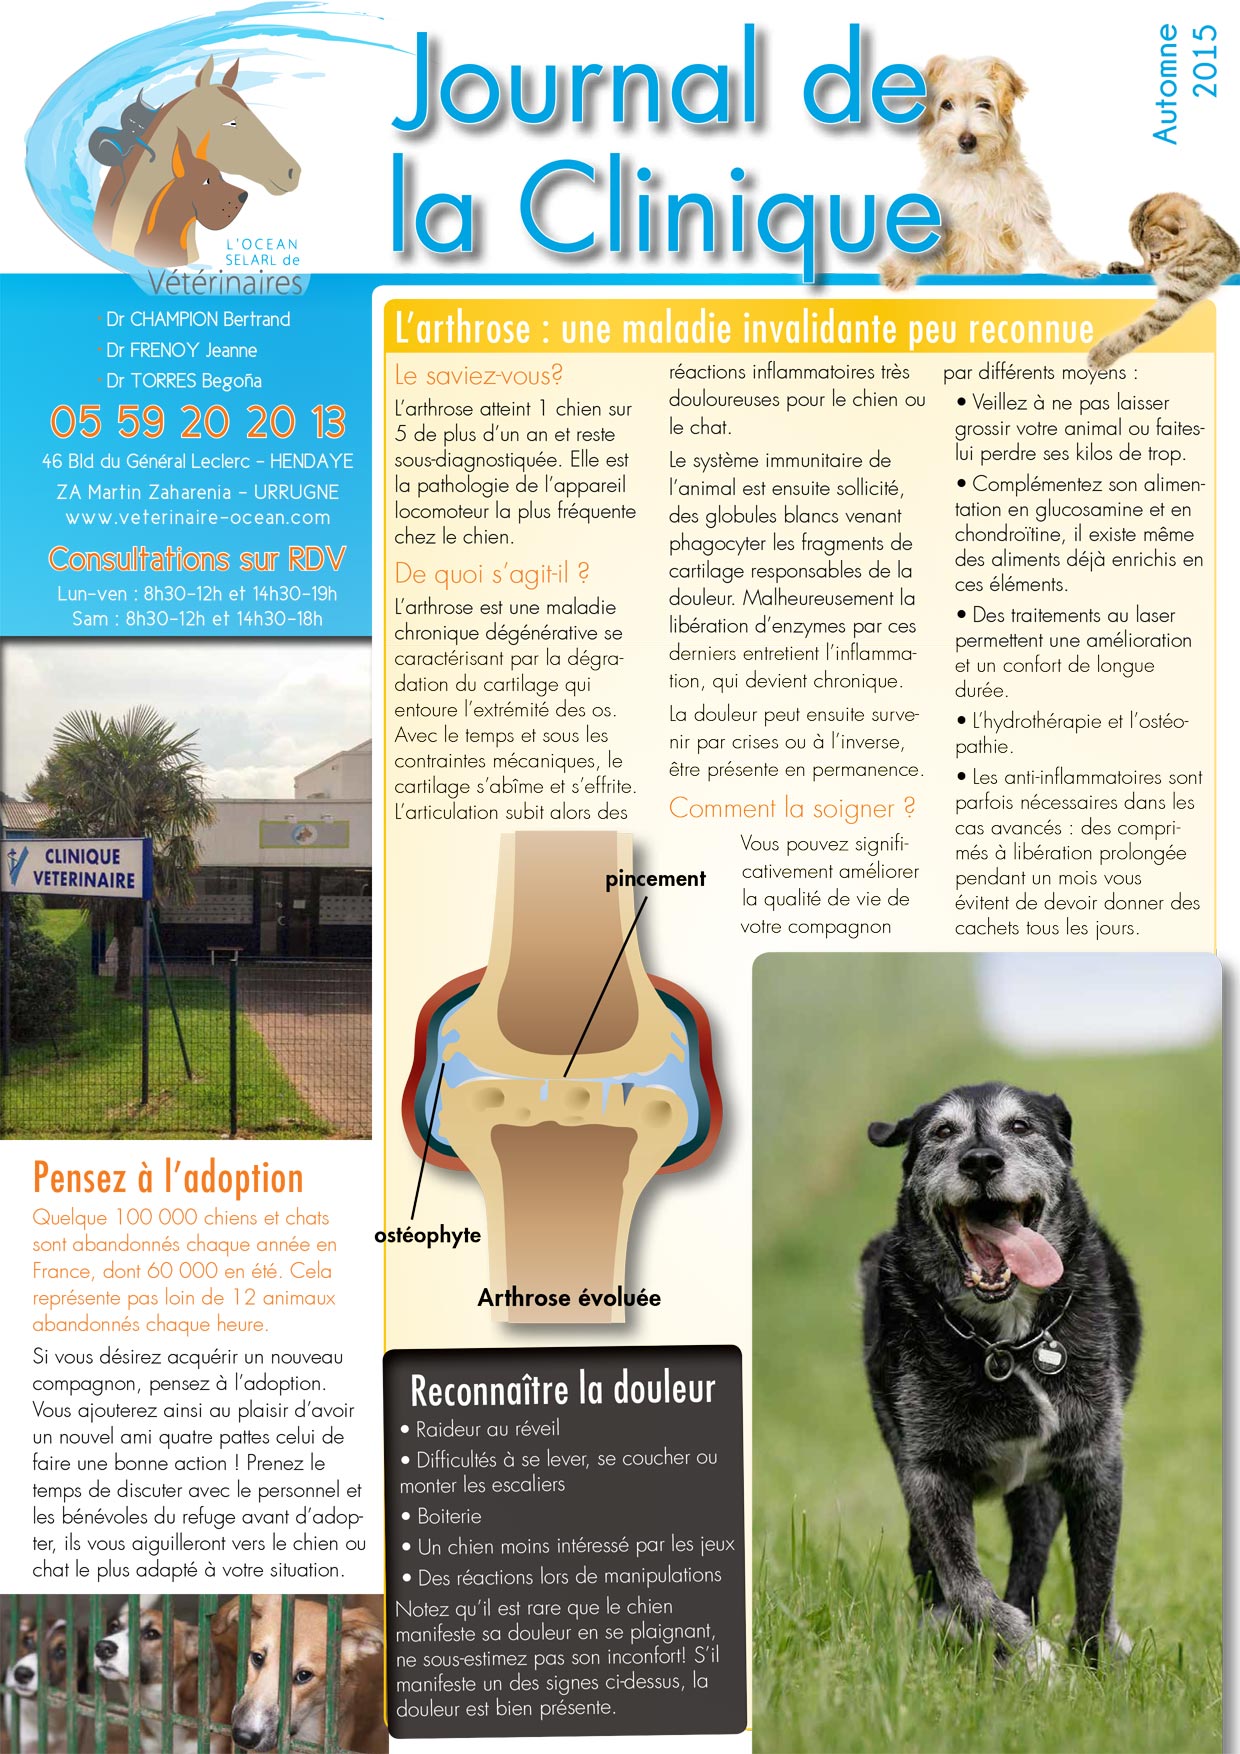 Le Journal de la Clinique - Automne 2015 page 1